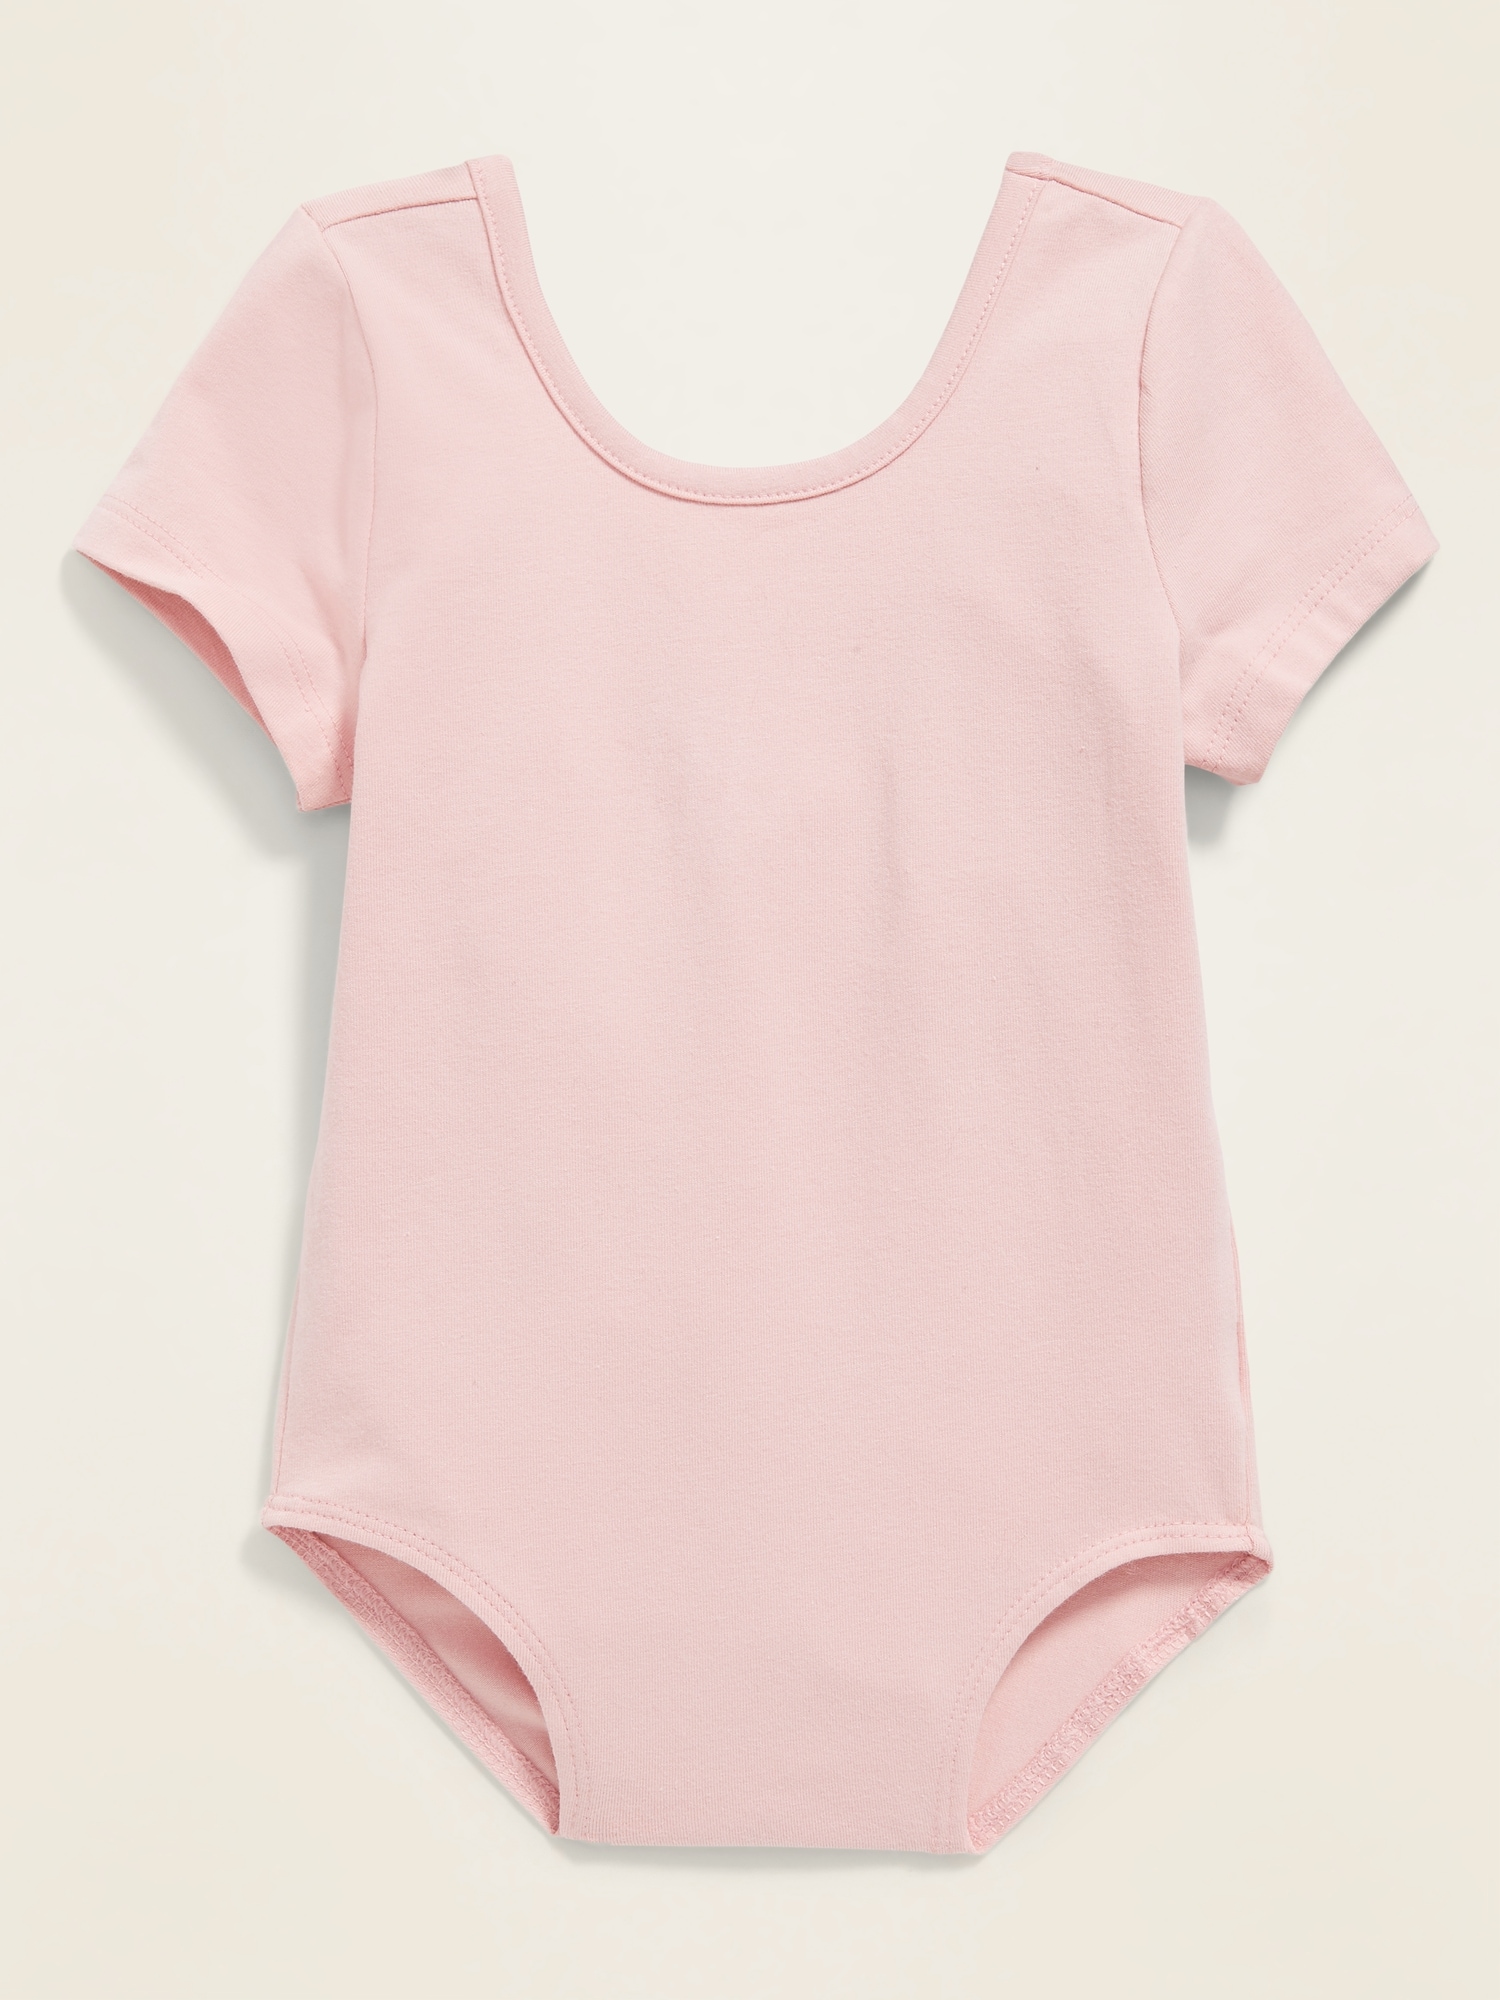 Soft-Washed Jersey Leotard for Toddler Girls | Old Navy